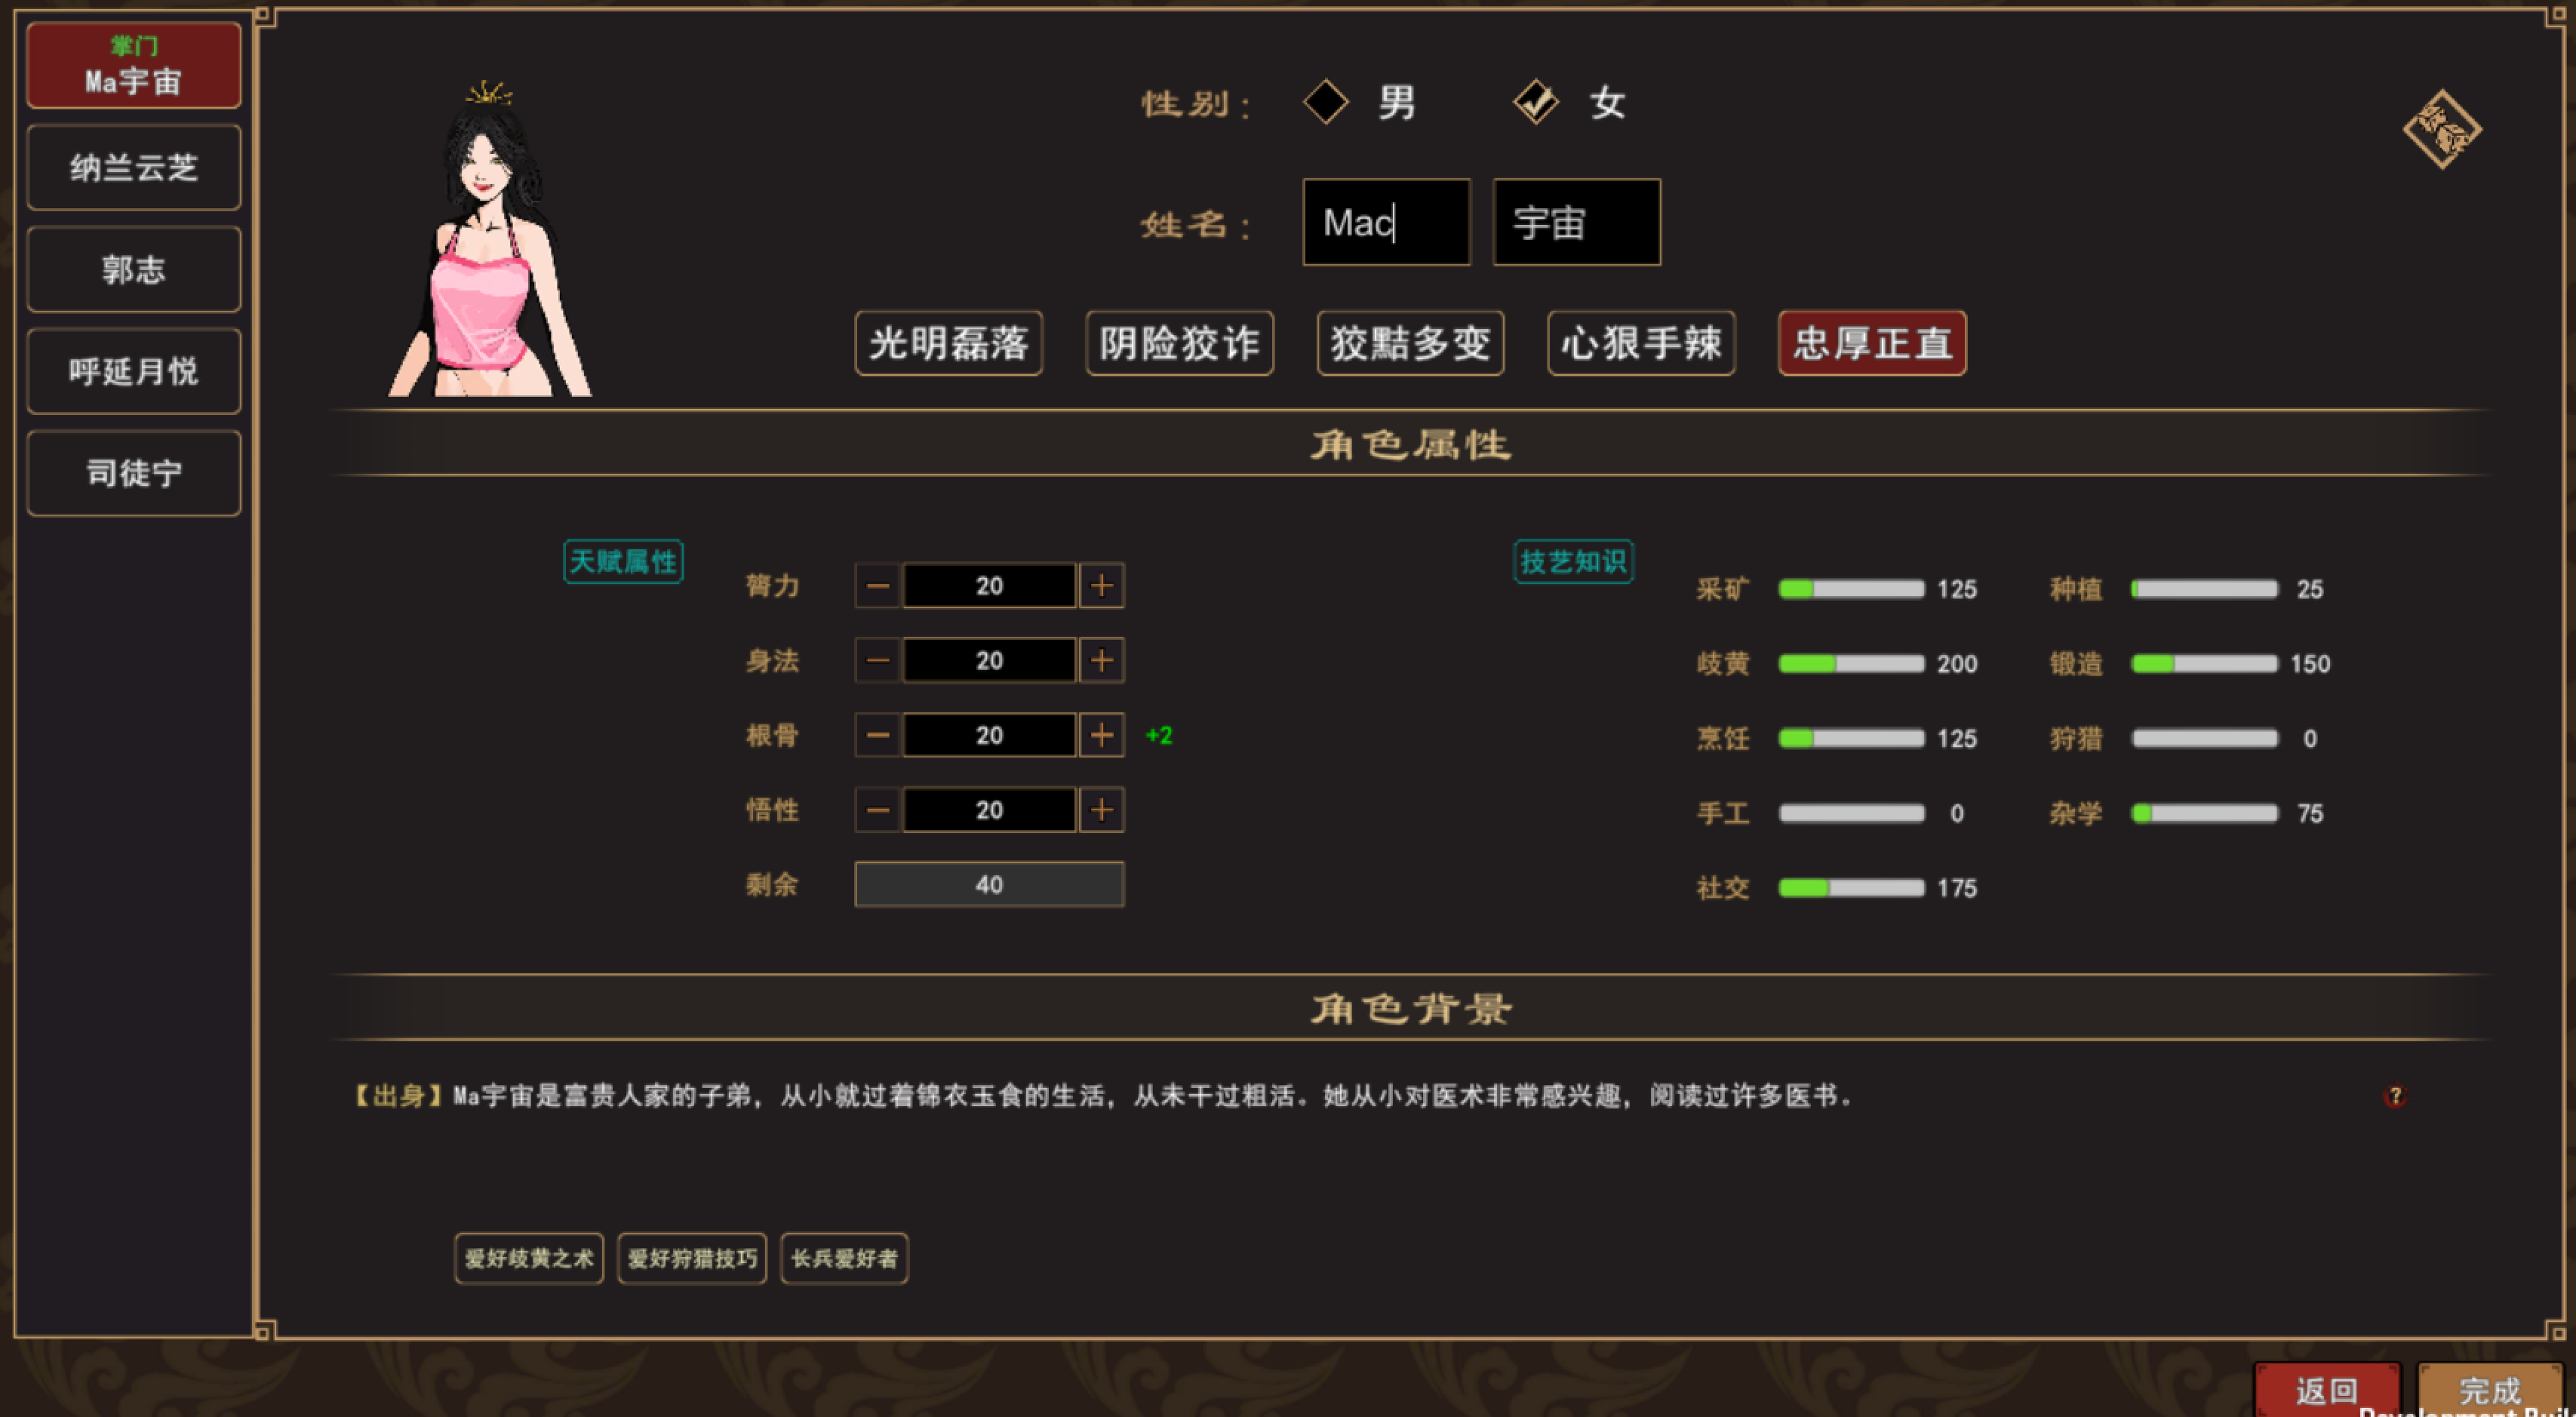 我来自江湖 for Mac v0.4.29 From Jianghu 中文移植版 苹果电脑